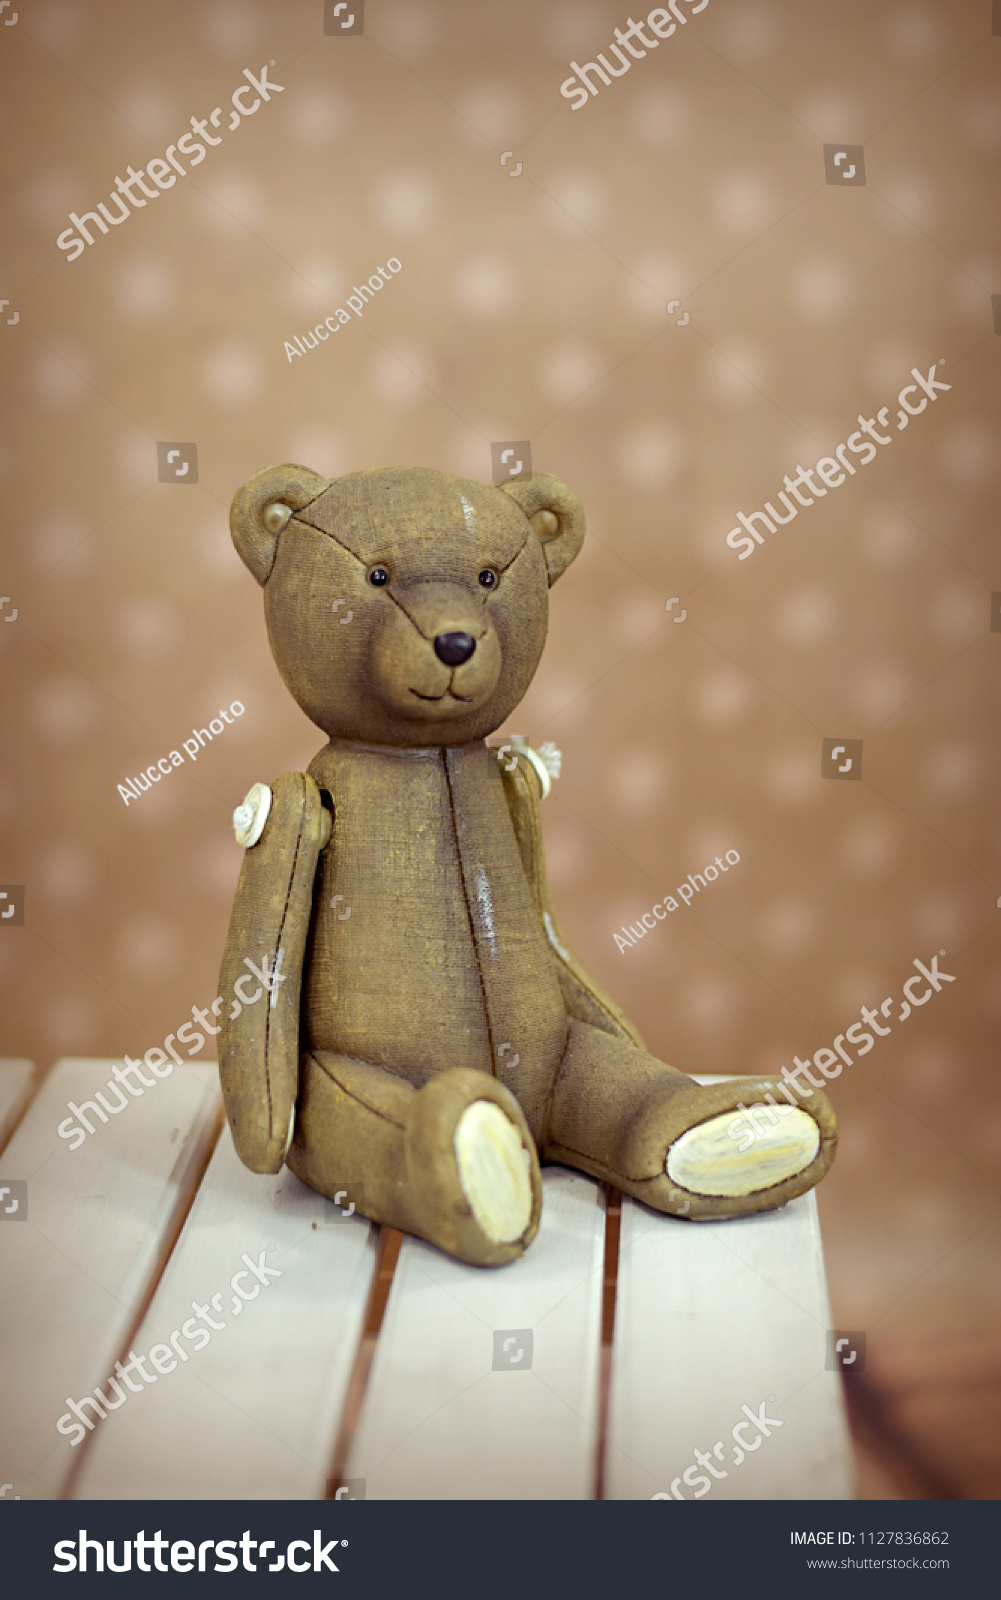 teddy bear and toys #1127836862